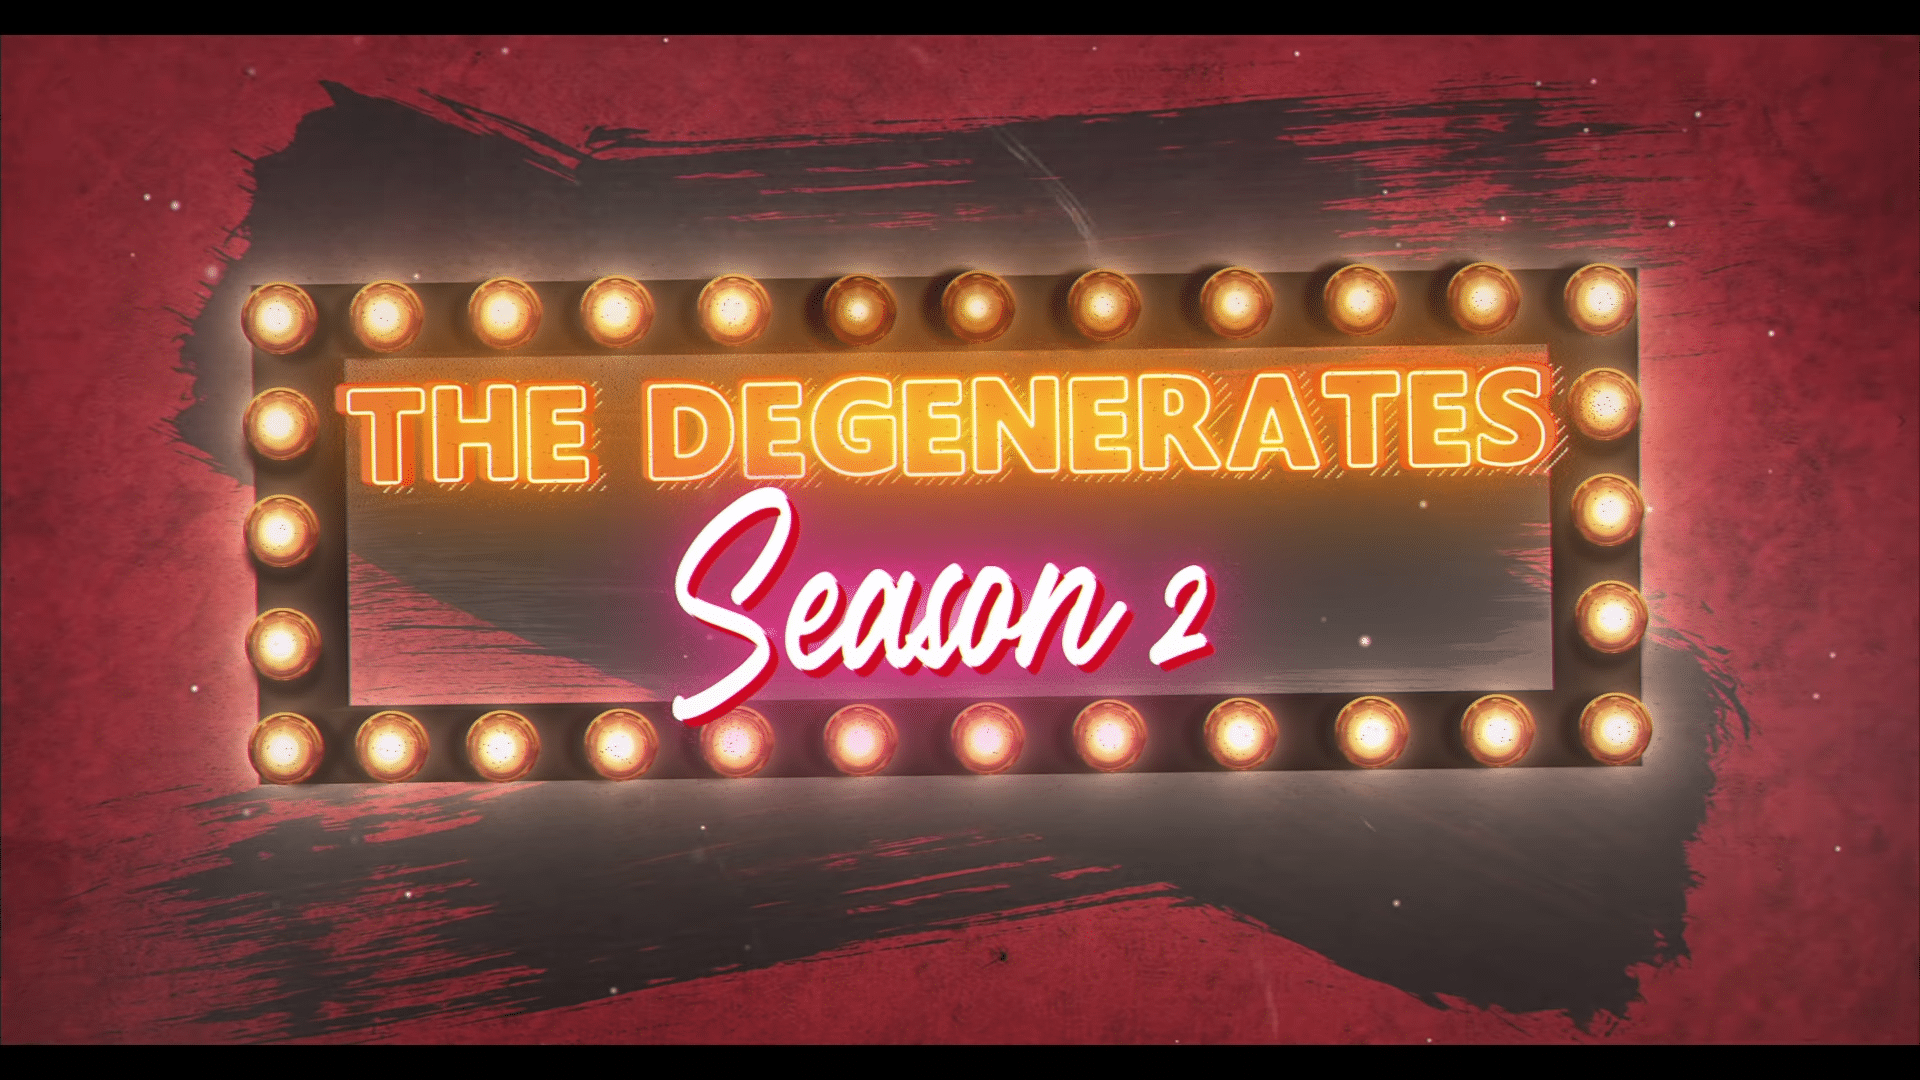 The Degenerates Season 2 Netflix Trailer, Netflix Standup Comedy Specials, Best Netflix Stand Up Comedy Specials, Coming to Netflix in December 2019